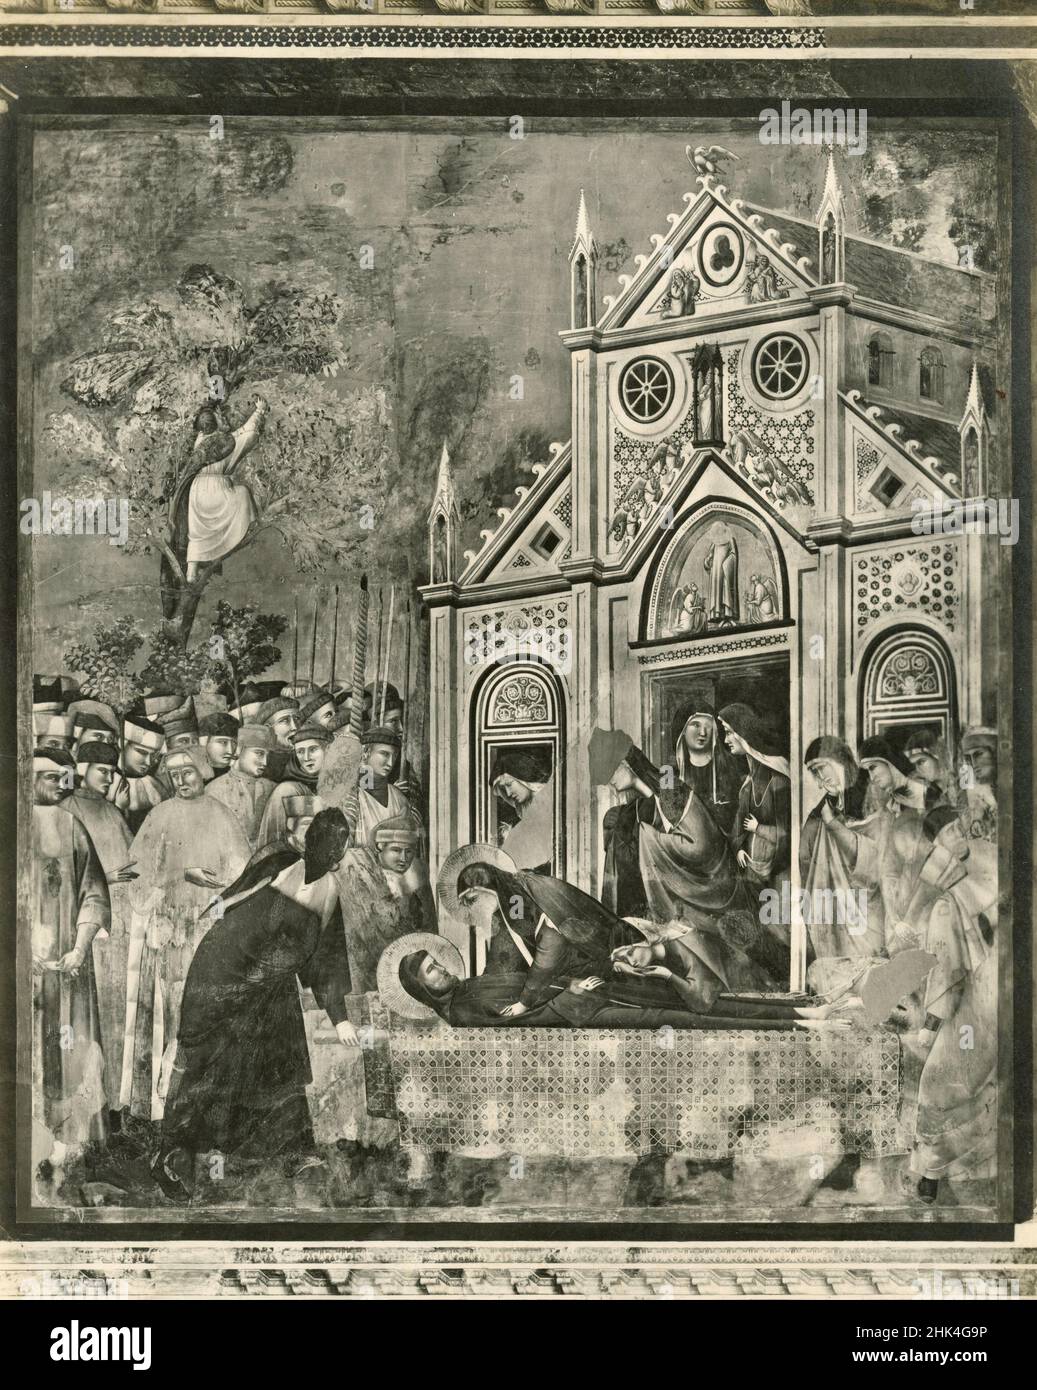 Traduction du cadavre de Saint François à l'église Saint-Damien, fresque de l'artiste italien Giotto di Bondone, église Saint-François, Assise, Italie 1930s Banque D'Images